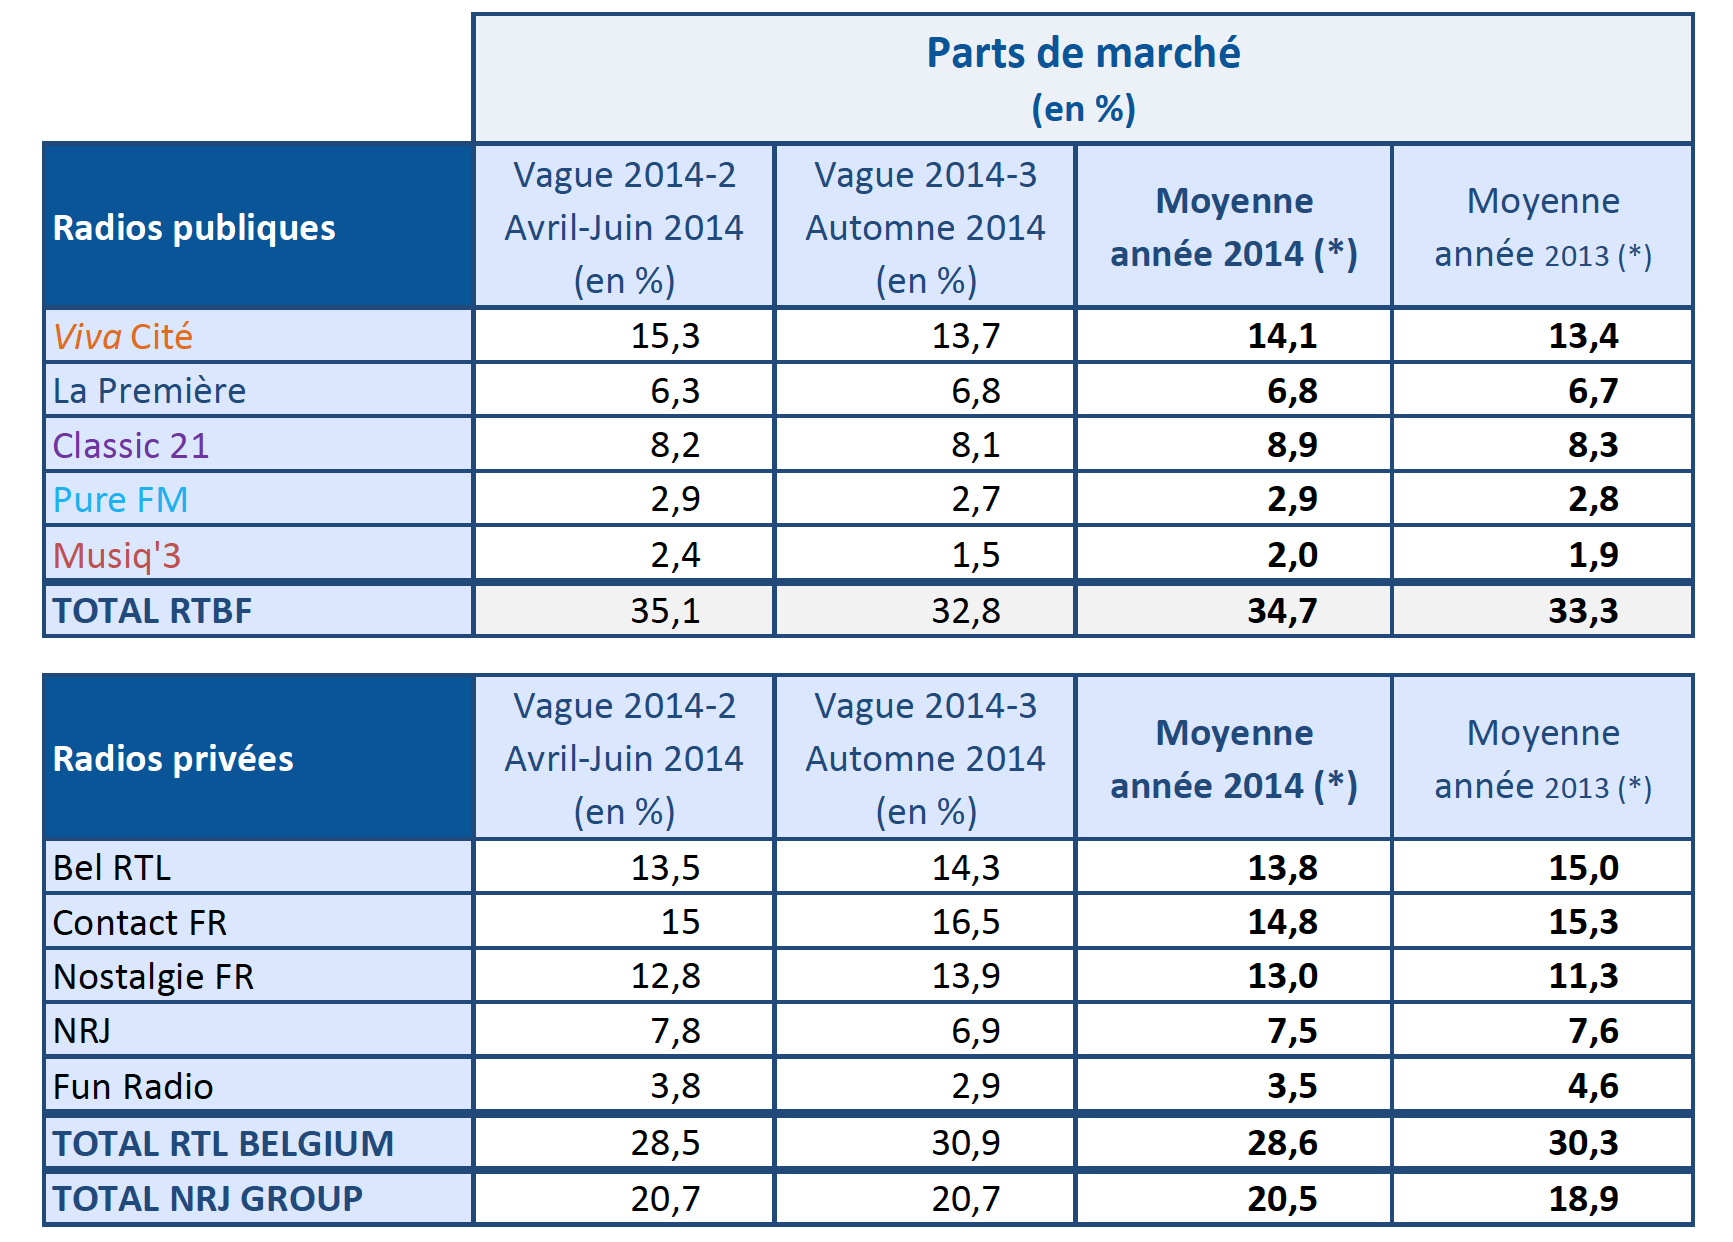 Tableau comparatif en parts de marché : W2014-2 (avril-juin 2014) - W2014-3 (Automne 2014)et moyenne Année 2014 et 2013